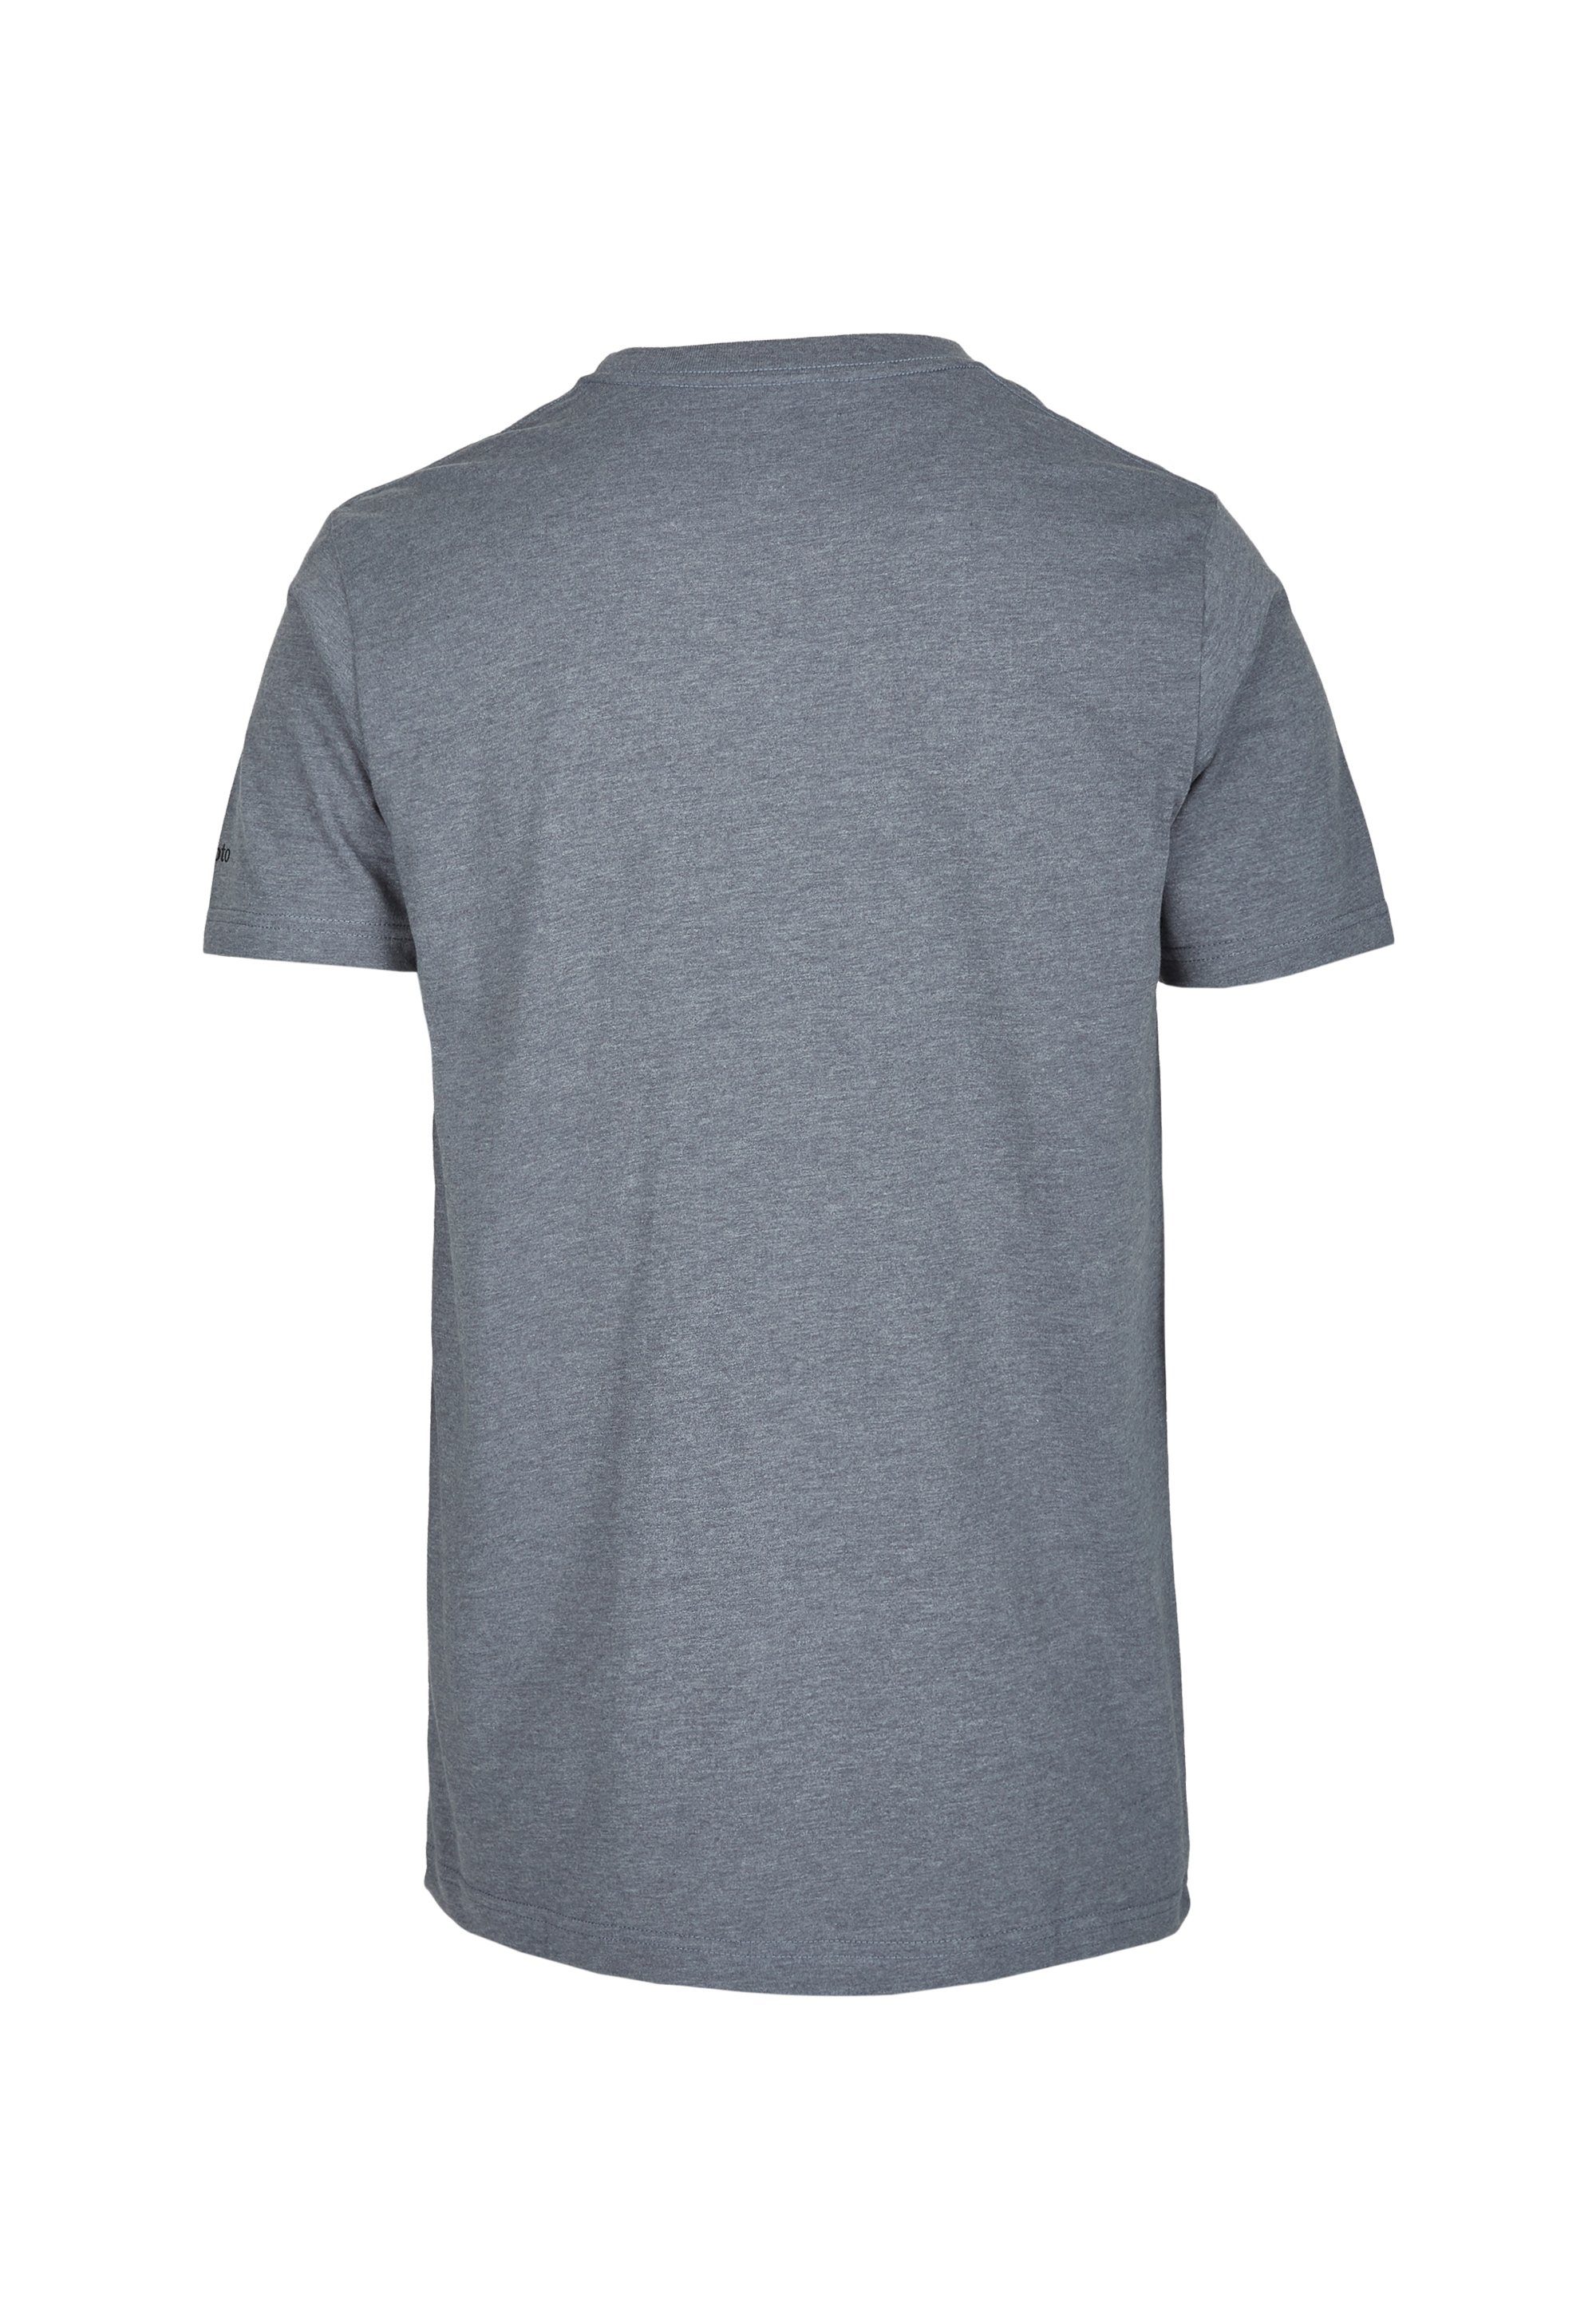 Mowe T-Shirt klassischem mit Print Cleptomanicx hellbraun-schwarz